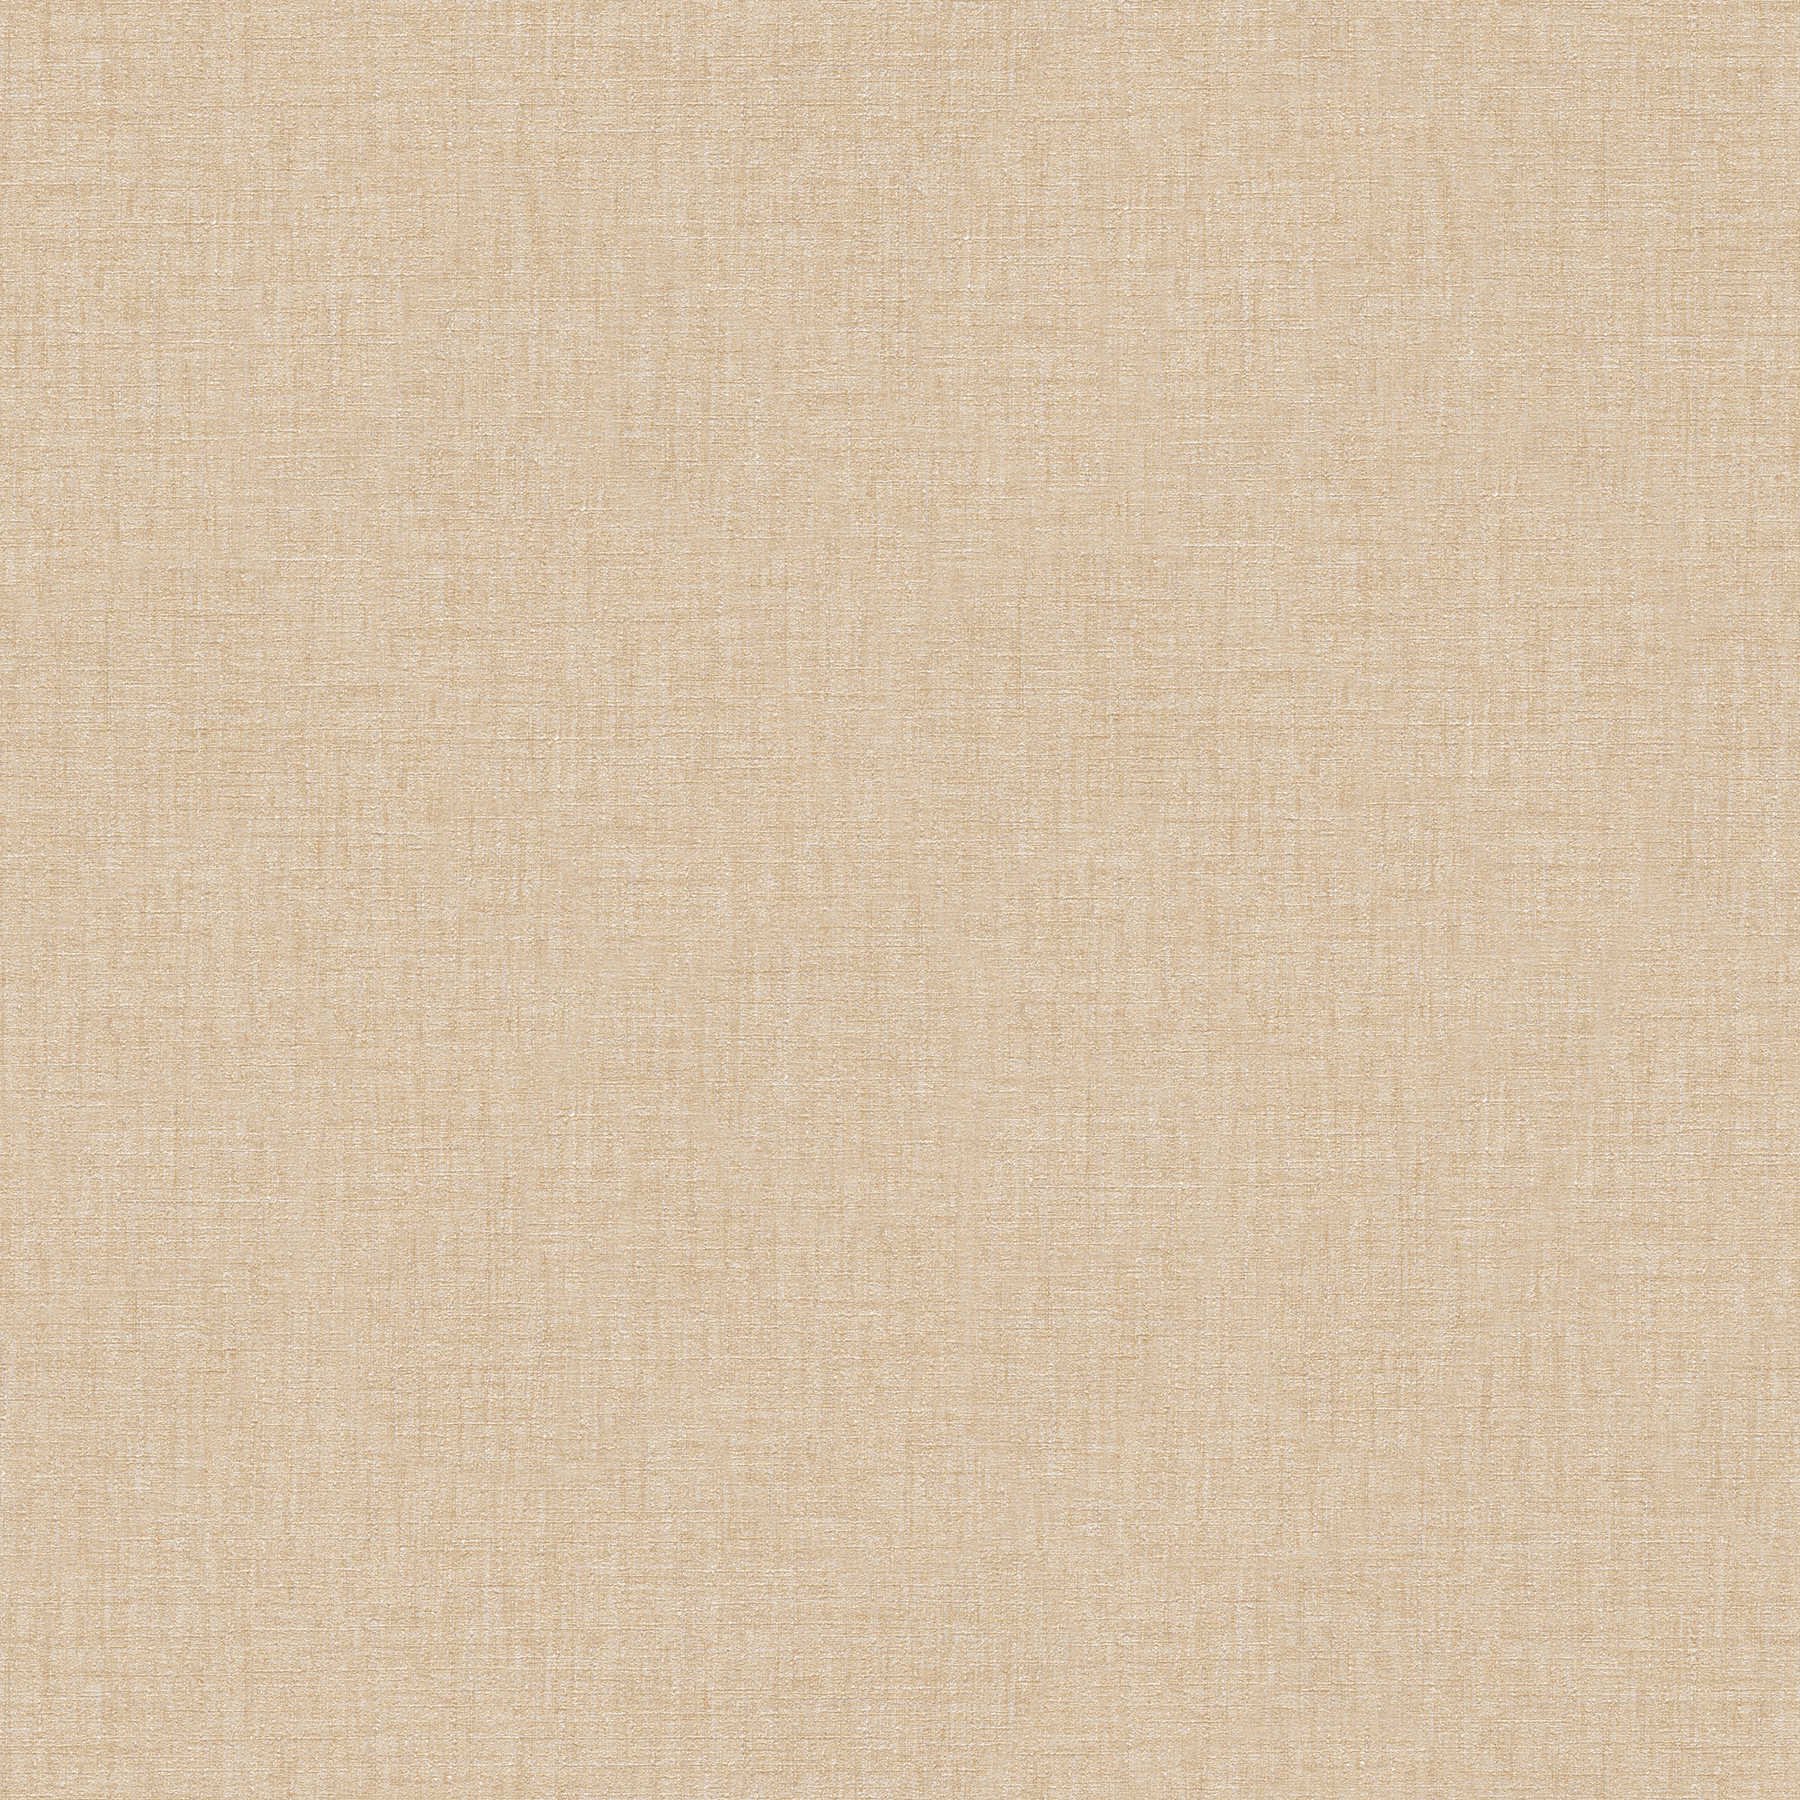 Plain wallpaper VERSACE in linen look with shimmer - beige
